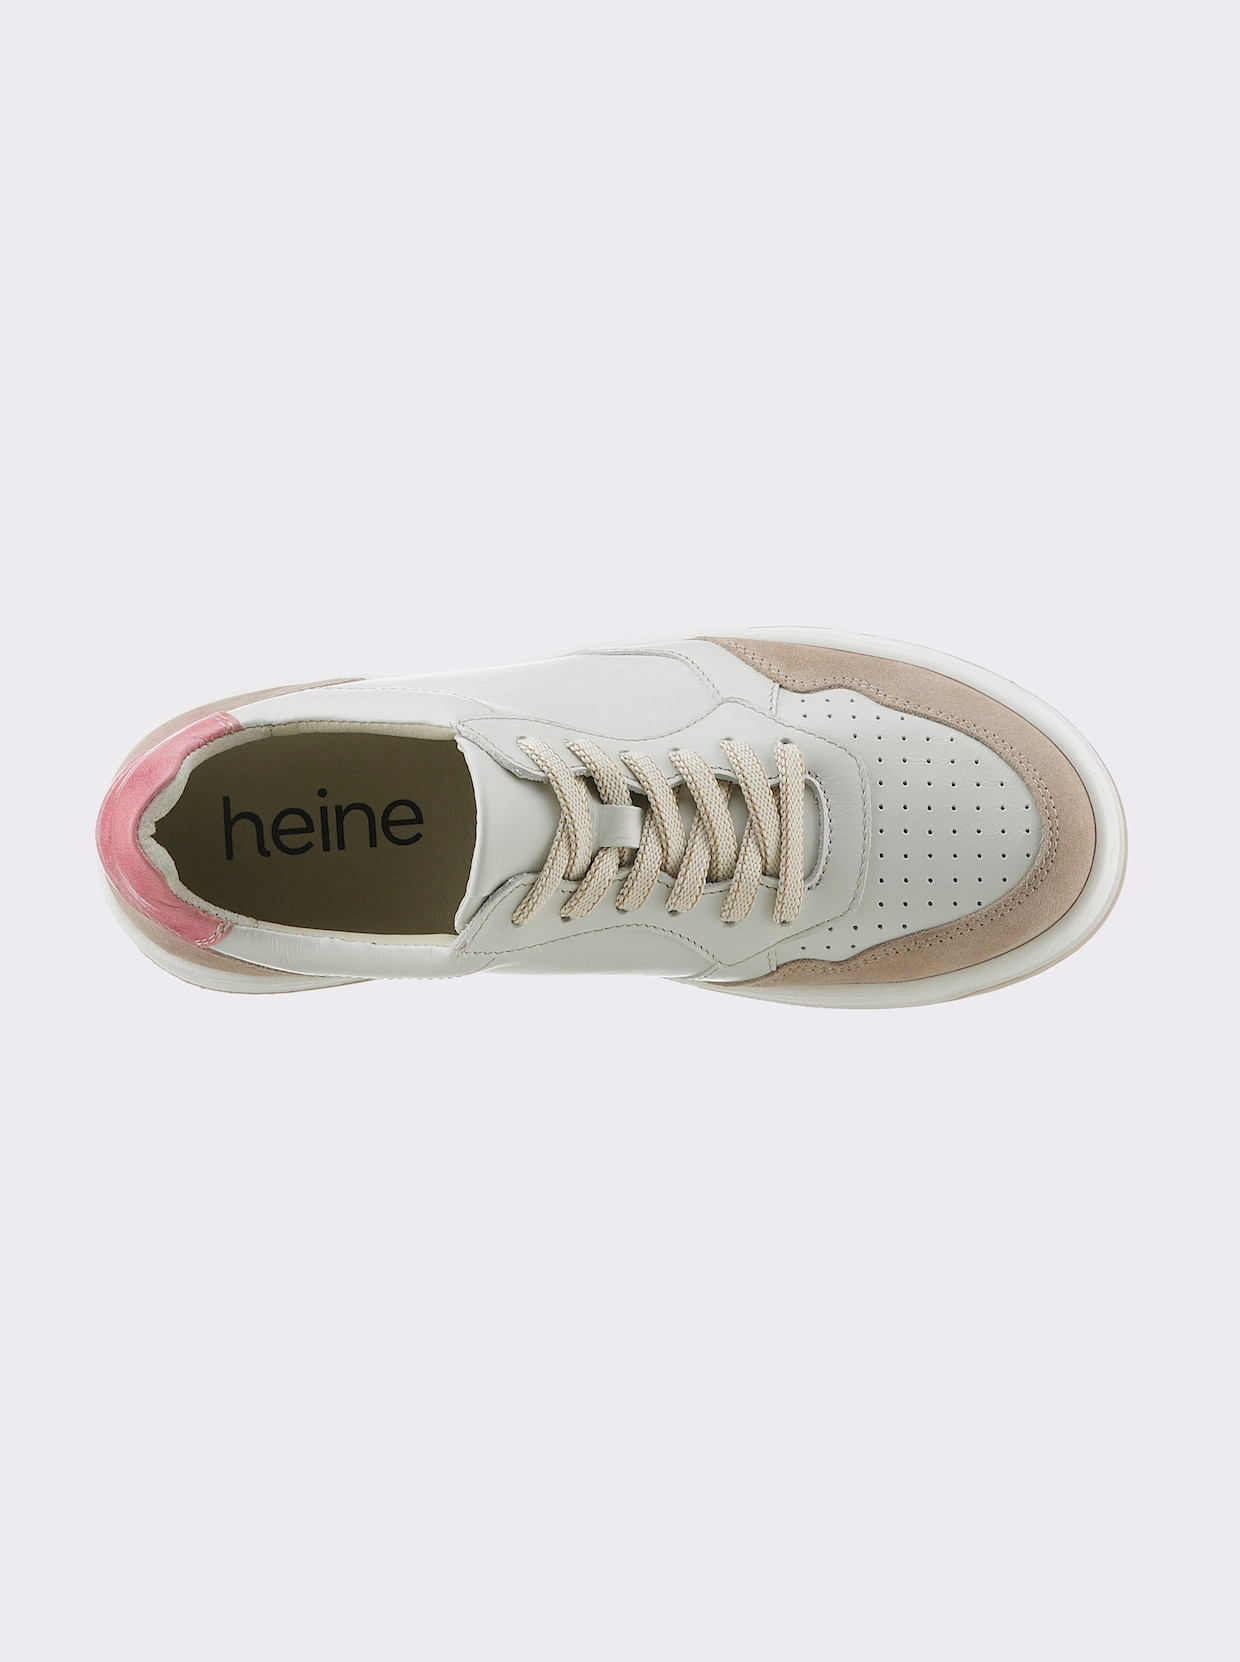 heine Sneaker - ecru/mauve